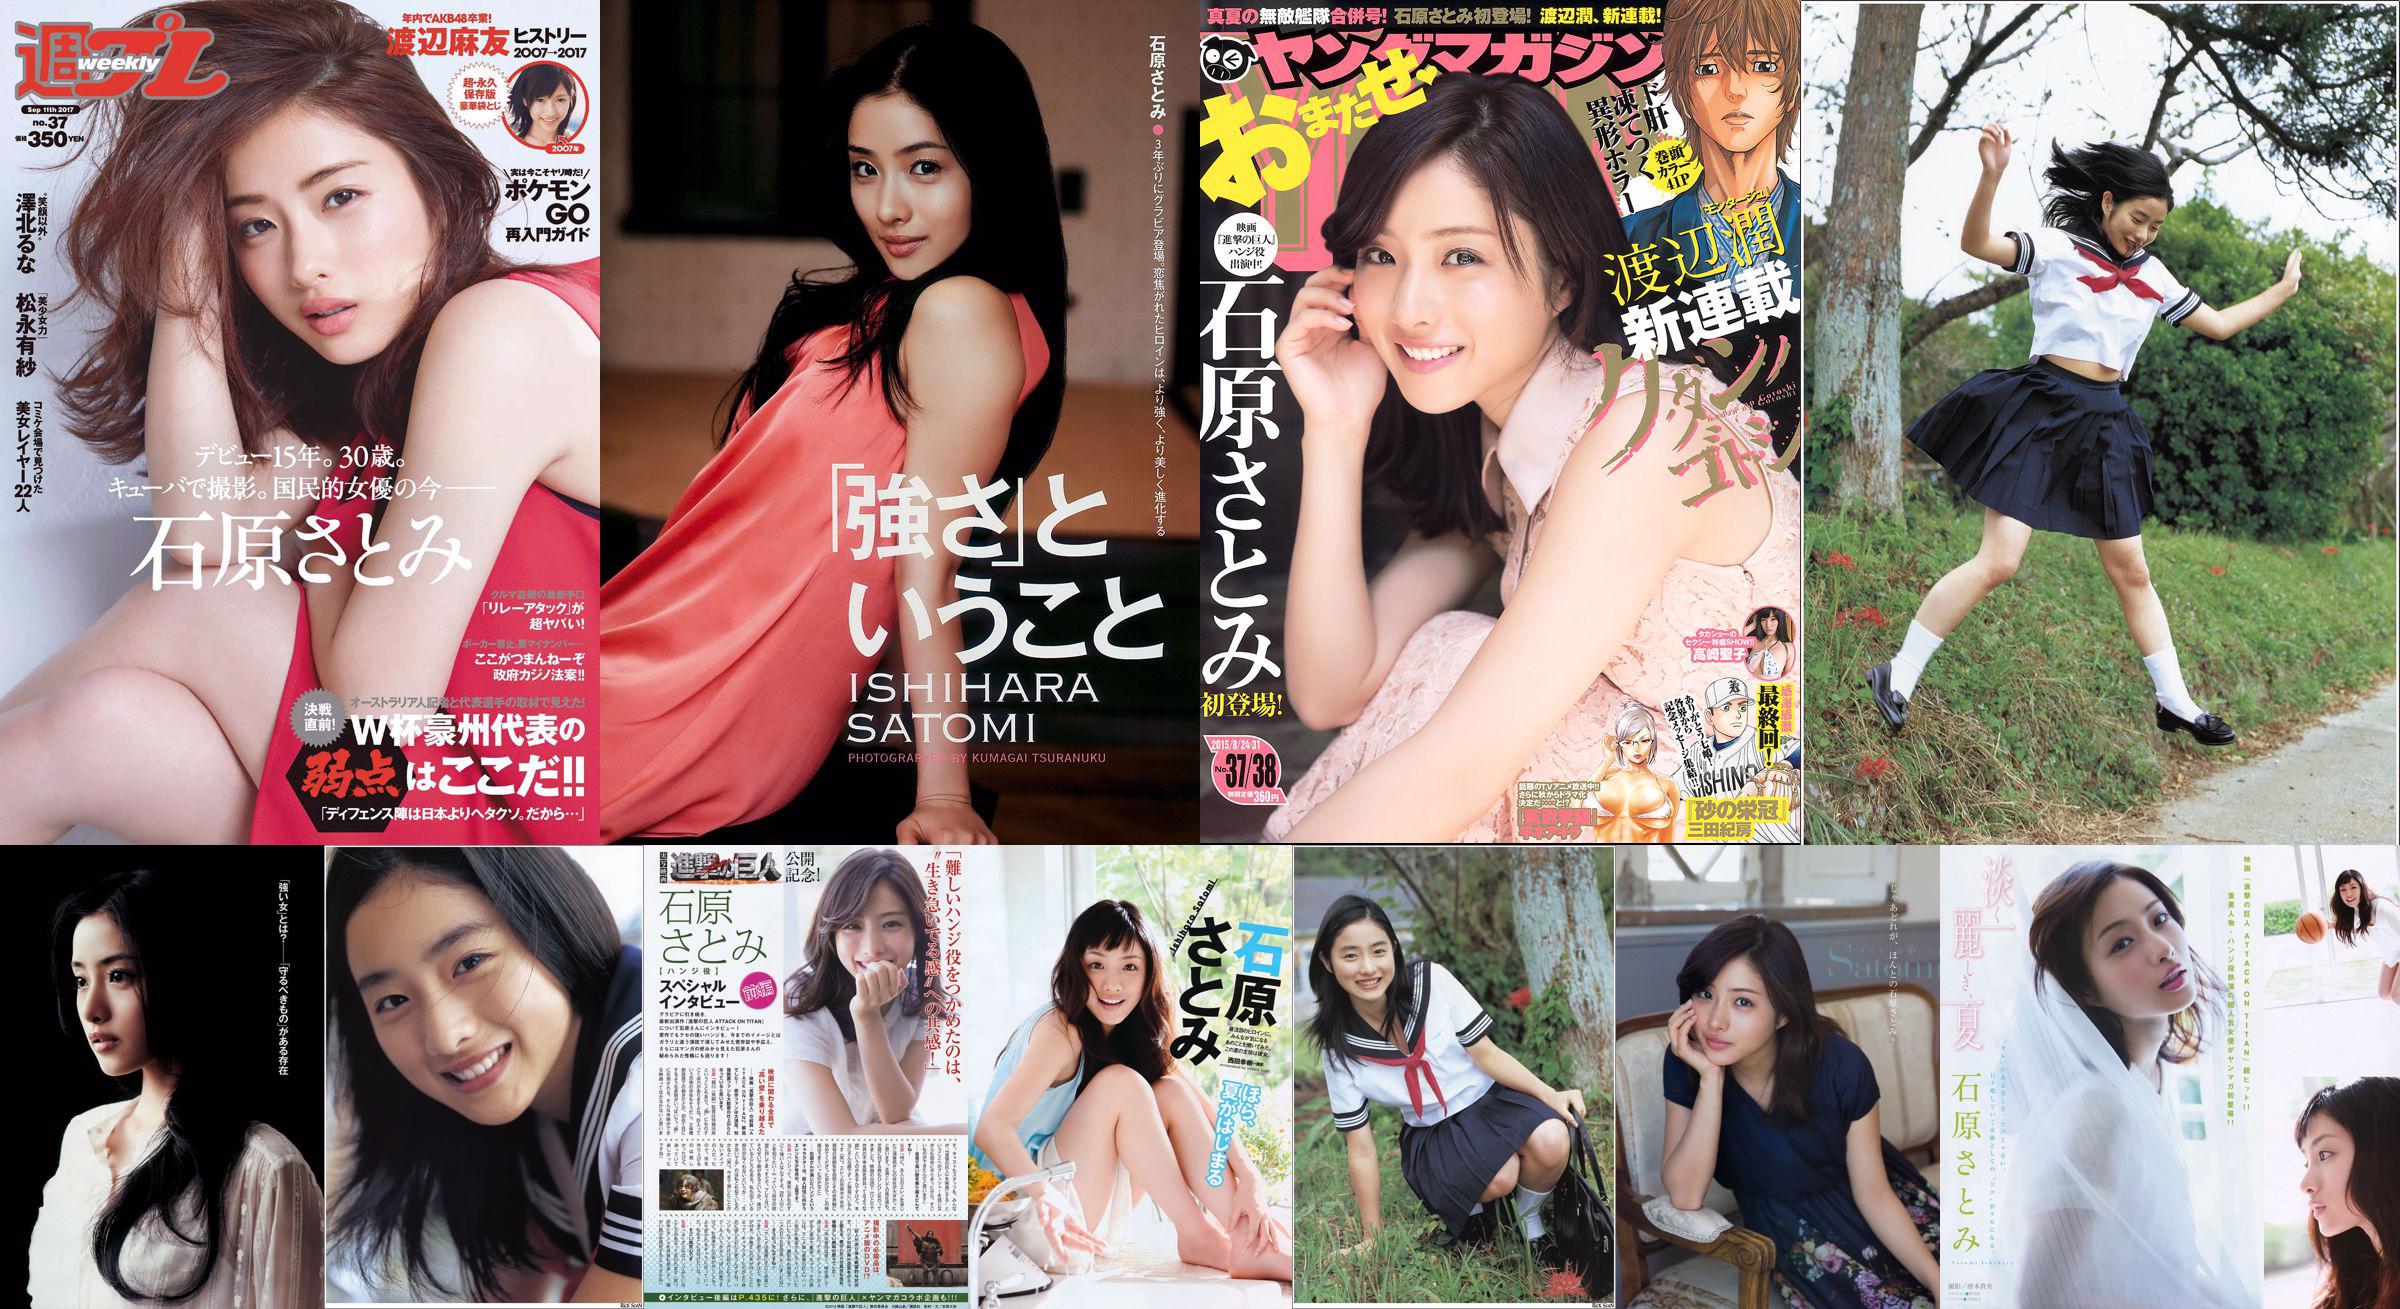 [Young Magazine] Ishihara さとみ Takasaki Seiko 2015 No.37-38 Photo Magazine No.8bdb33 Pagina 1